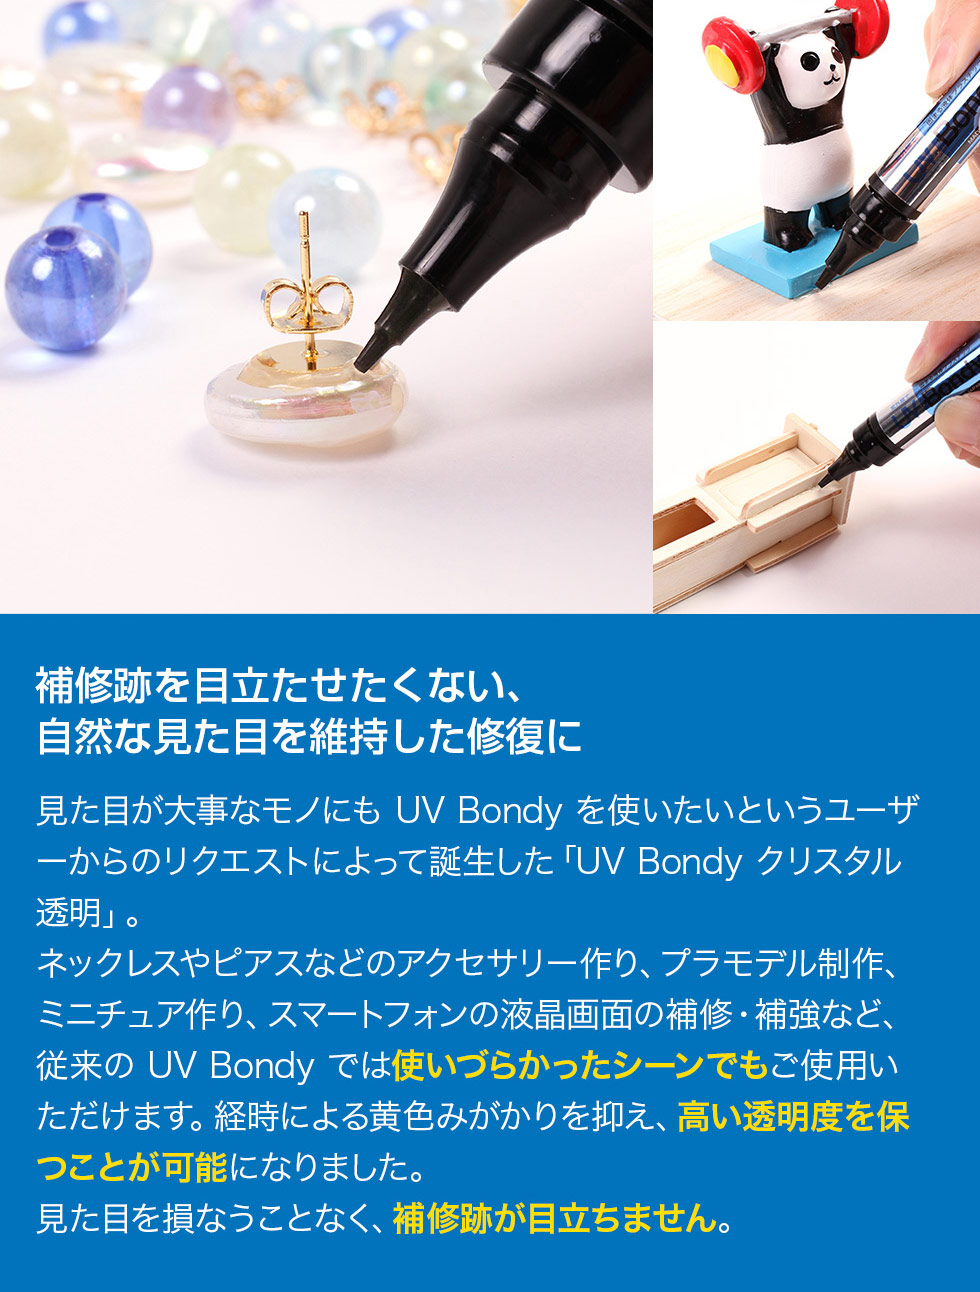 日本製 UV Bondy(ユーブイ ボンディ) クリスタル透明 スターターキット ほぼすべてのものを接着、固定、塞ぐことが可能!液体プラスチック  接着剤 溶接機 LED(UV)紫外線ライト プリンタインクのジットストア